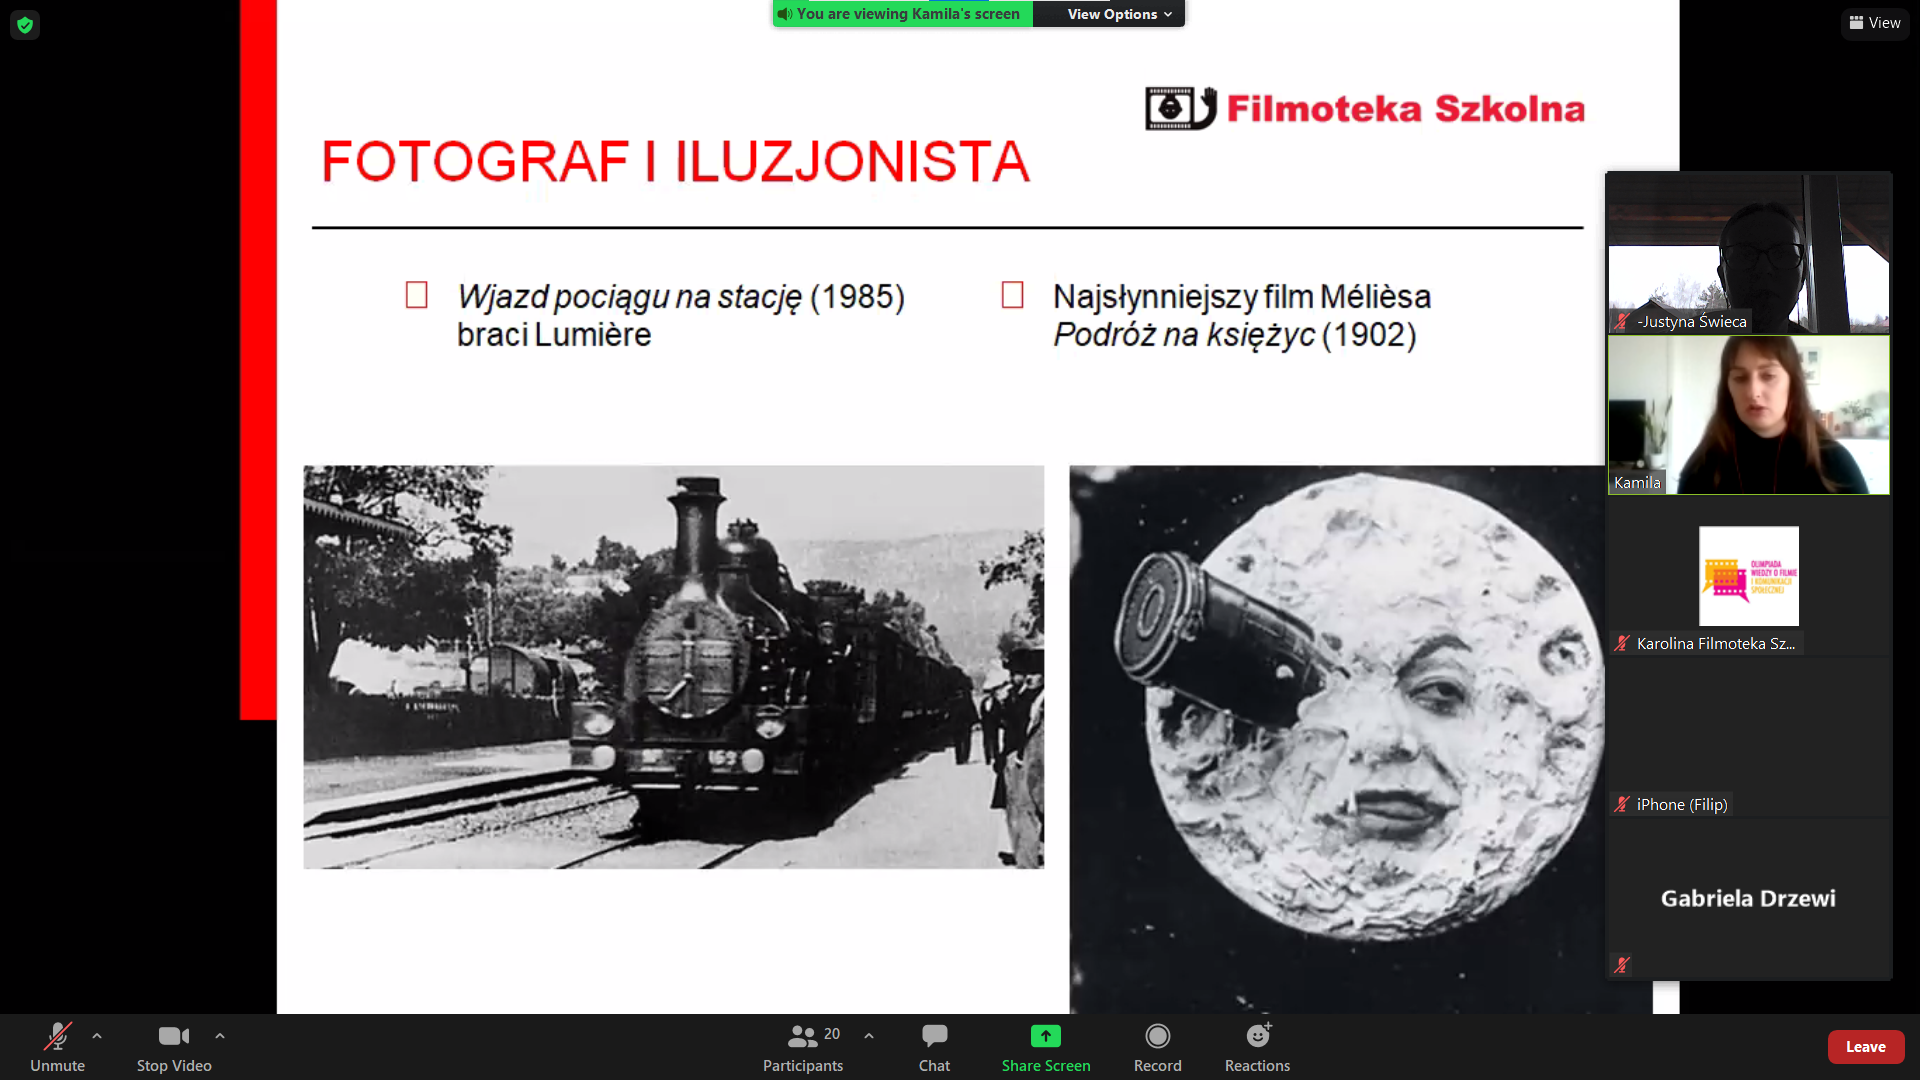 Kadry pierwszych filmów - Wjazd pociągu na stację i Podróż na księżyc. 